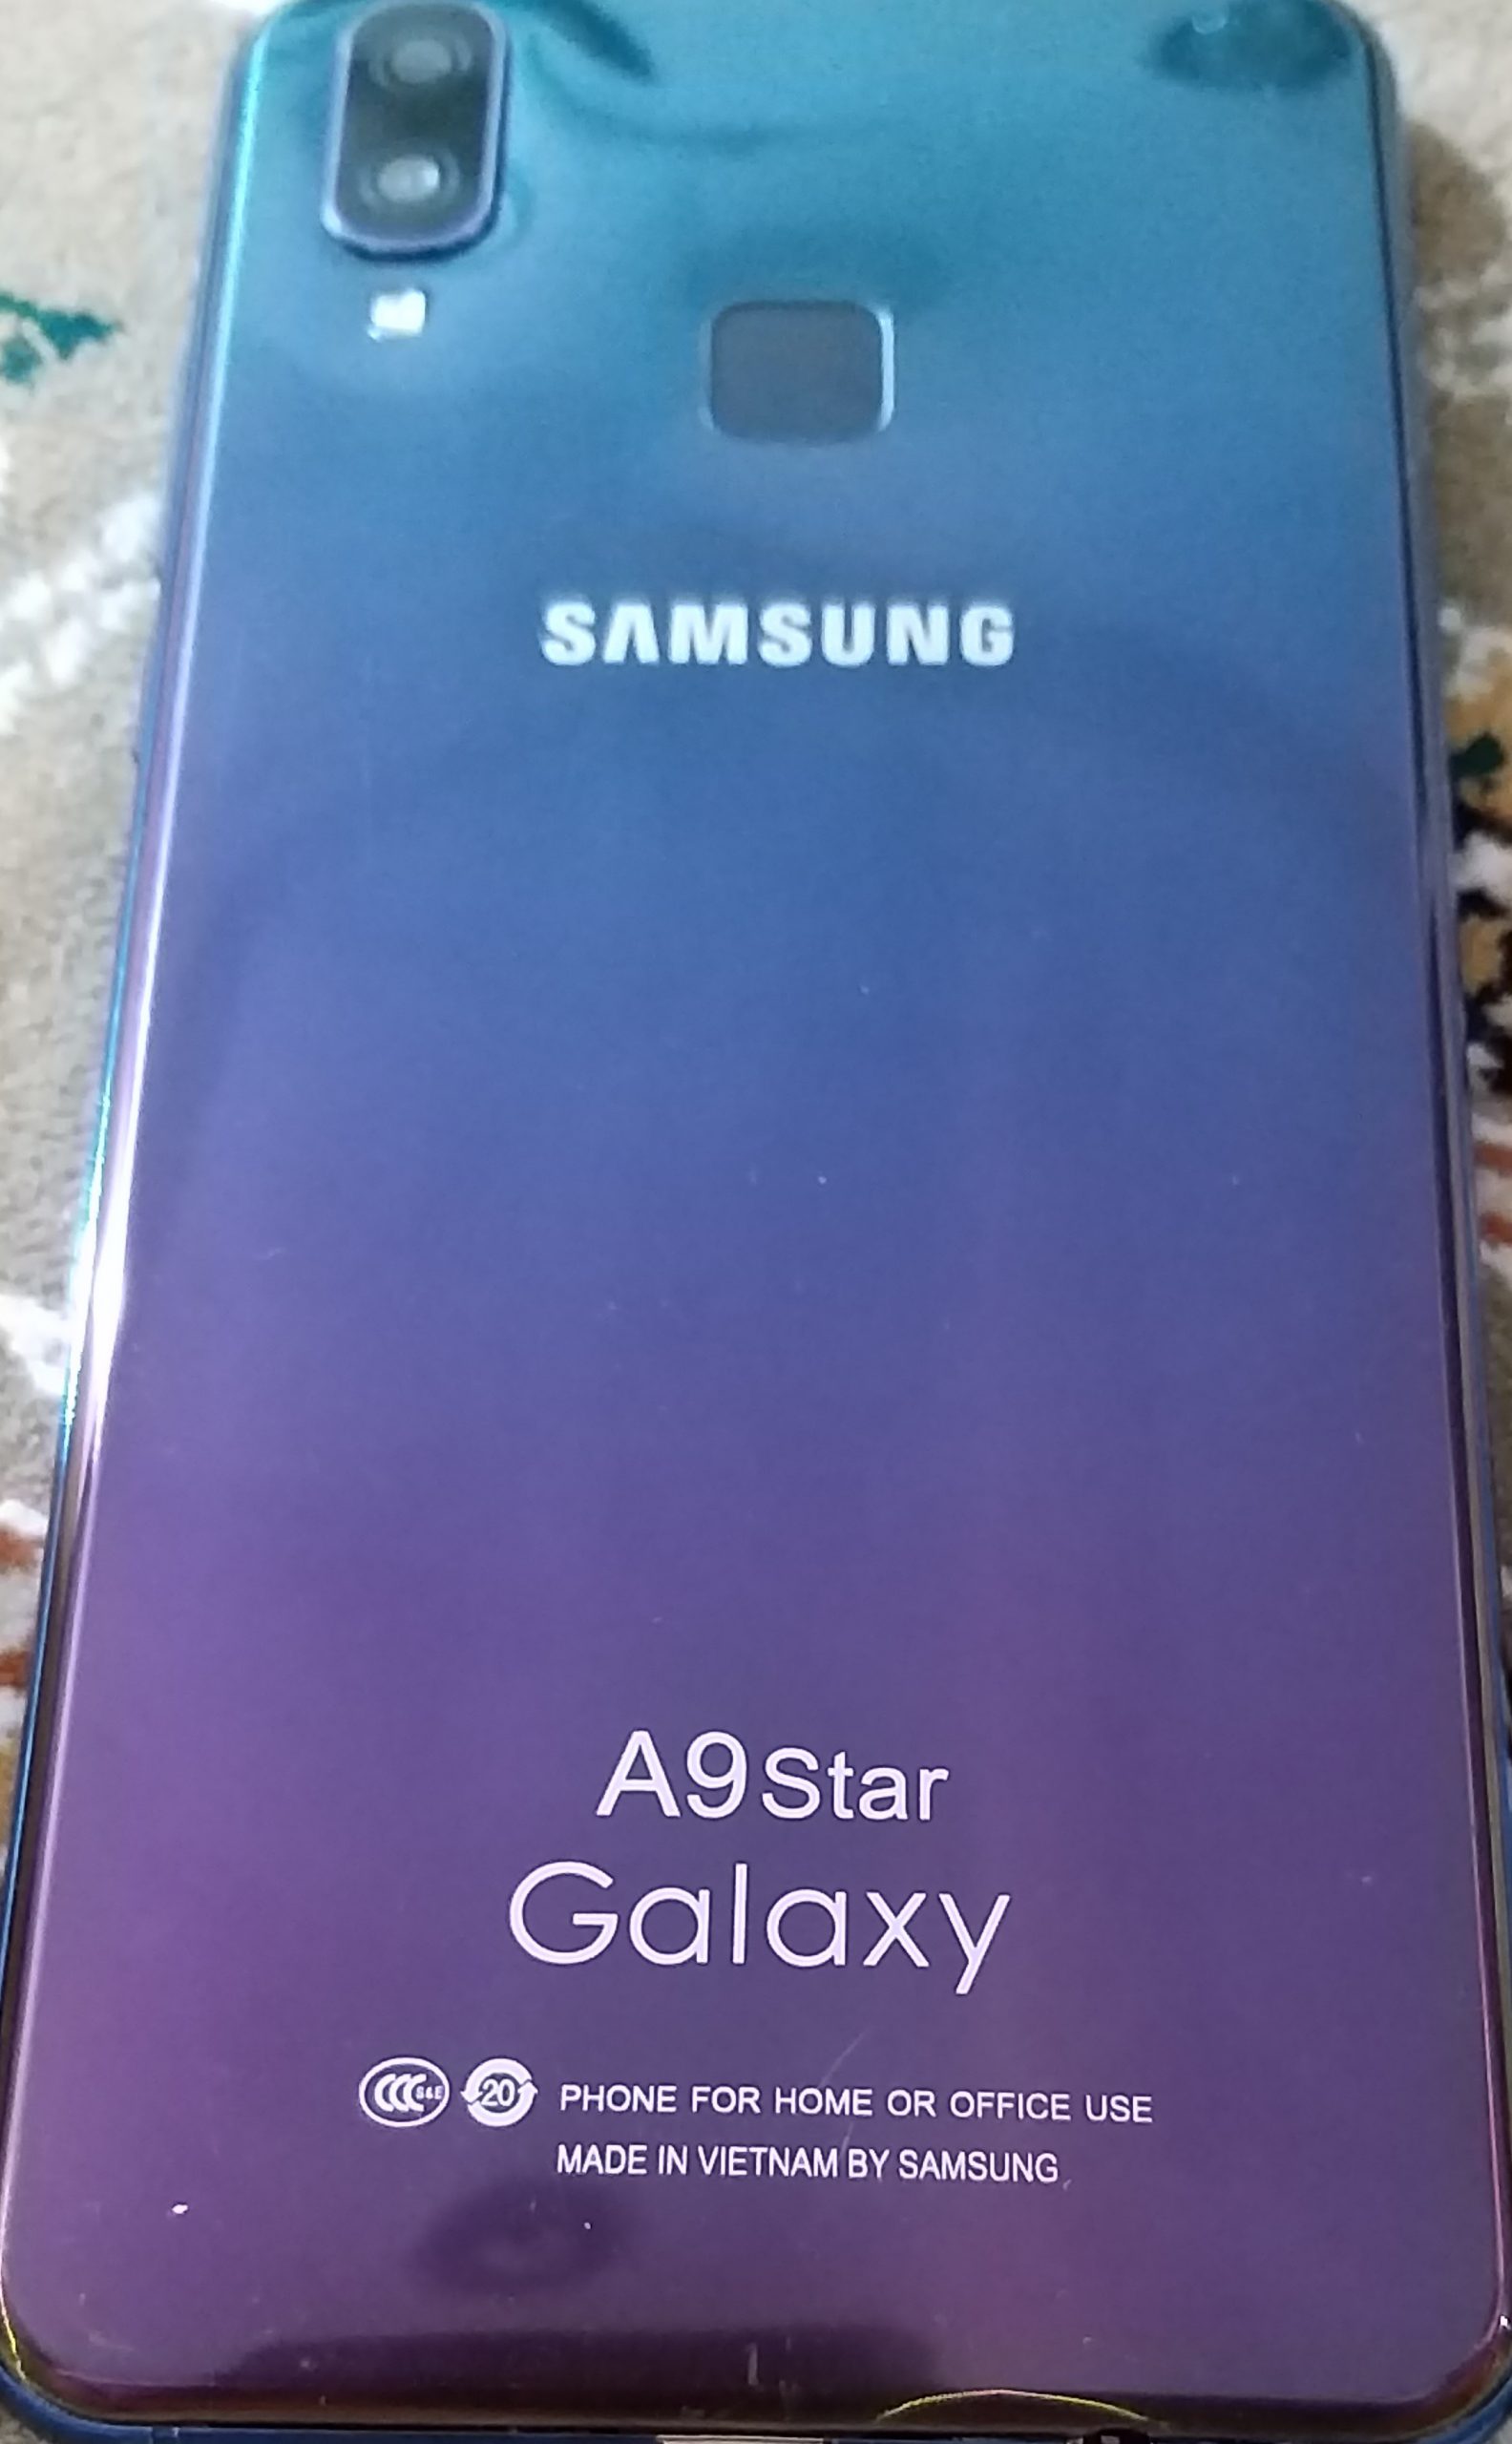 فایل فلش گوشی طرح اصلی Galaxy A9 star